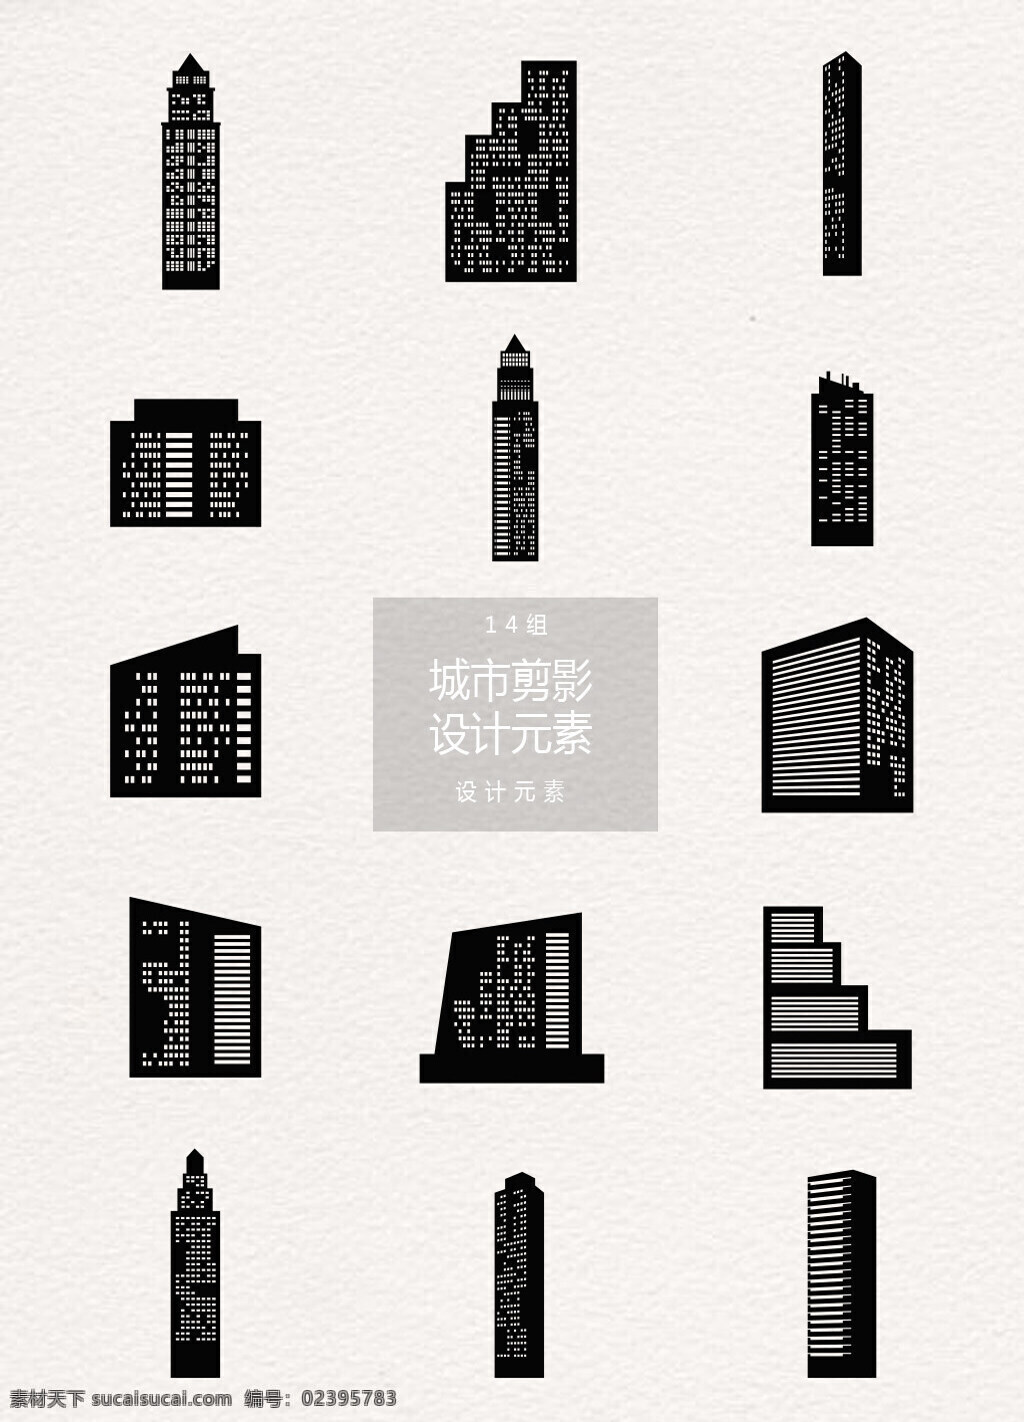 黑色 城市 建筑 剪影 元素 城市建筑 城市背景 设计元素 建筑剪影 城市建筑剪影 办公楼